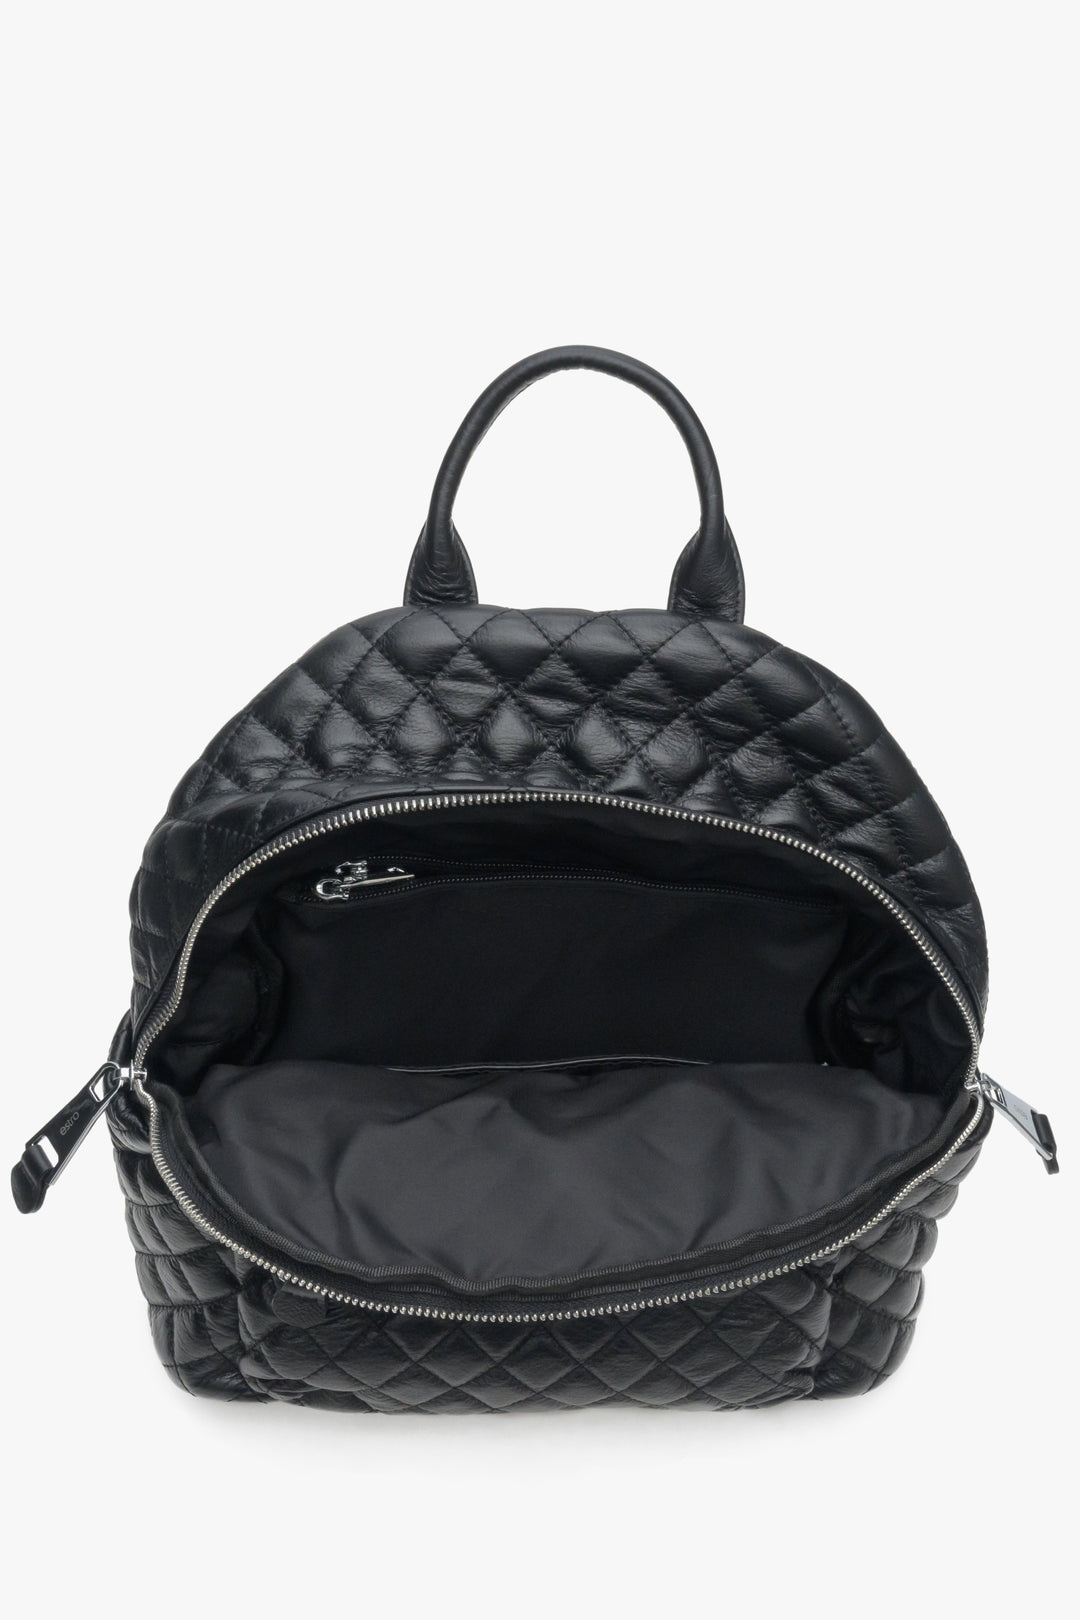 Miejski, skórzany plecak damski w kolorze czarnym - zbliżenie na wnętrze modelu marki Estro.